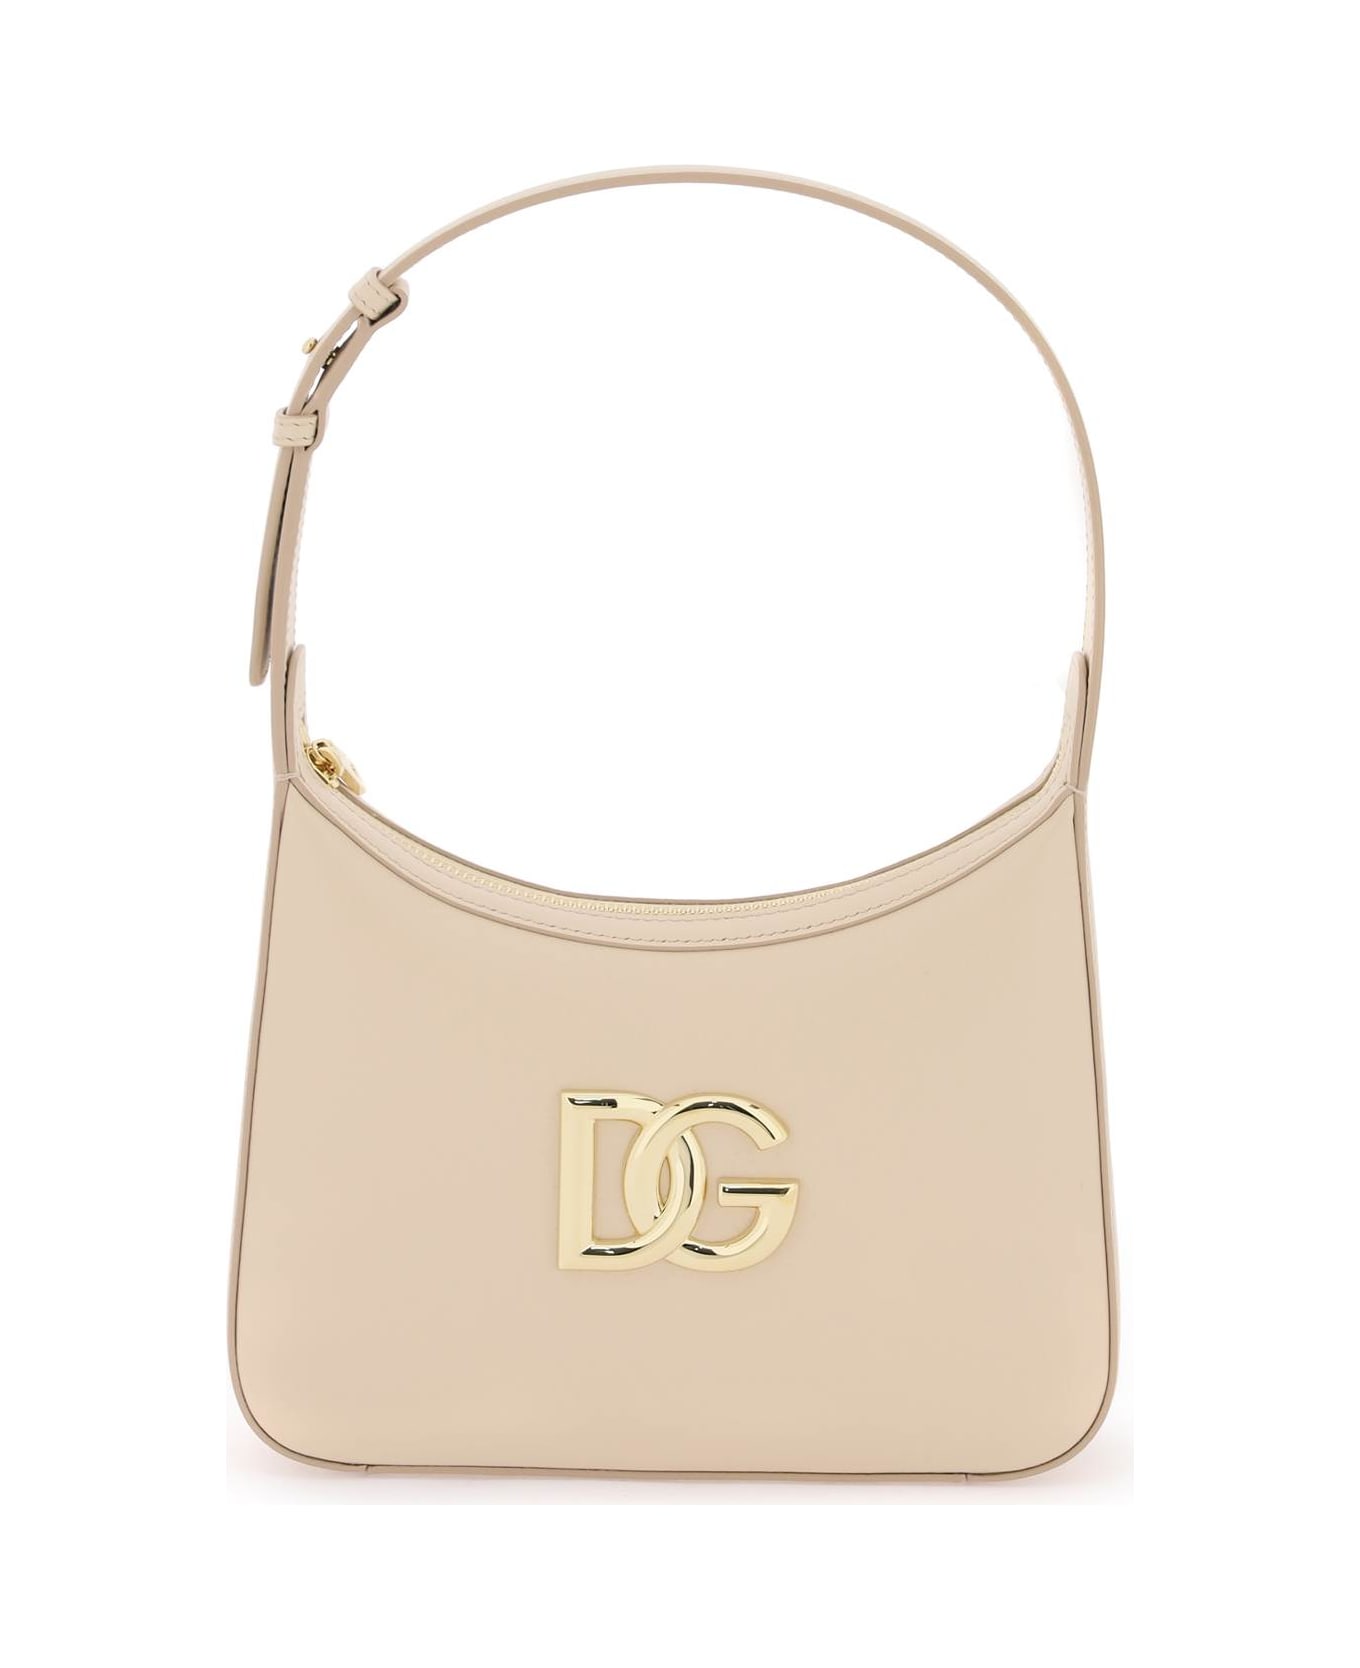 Dolce & Gabbana 3.5 Shoulder Bag - Rosa トートバッグ